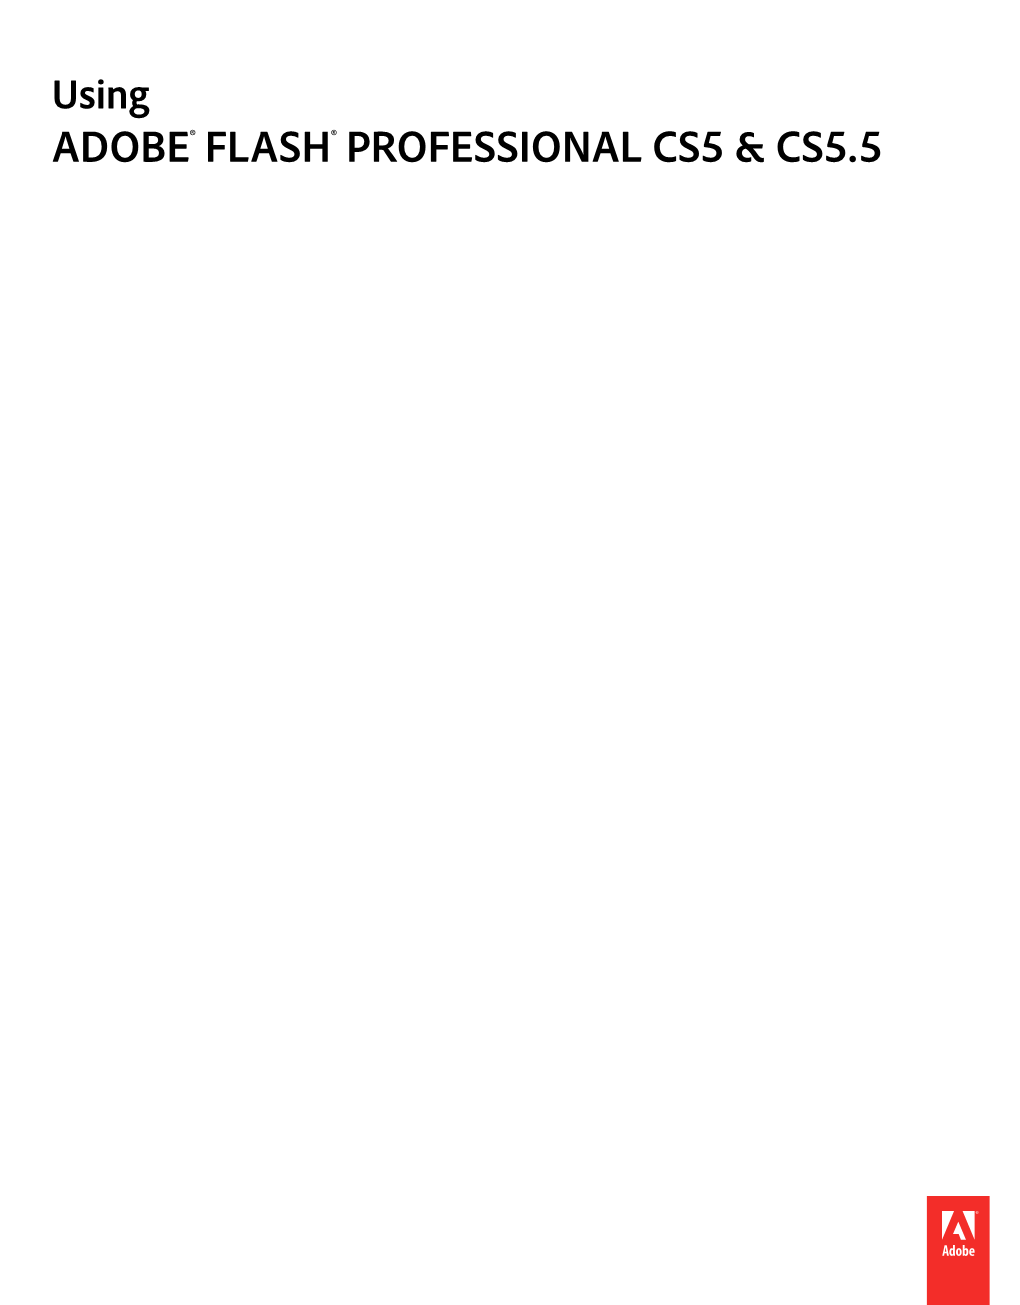 FLASH® PROFESSIONAL CS5 & CS5.5 Legal Notices